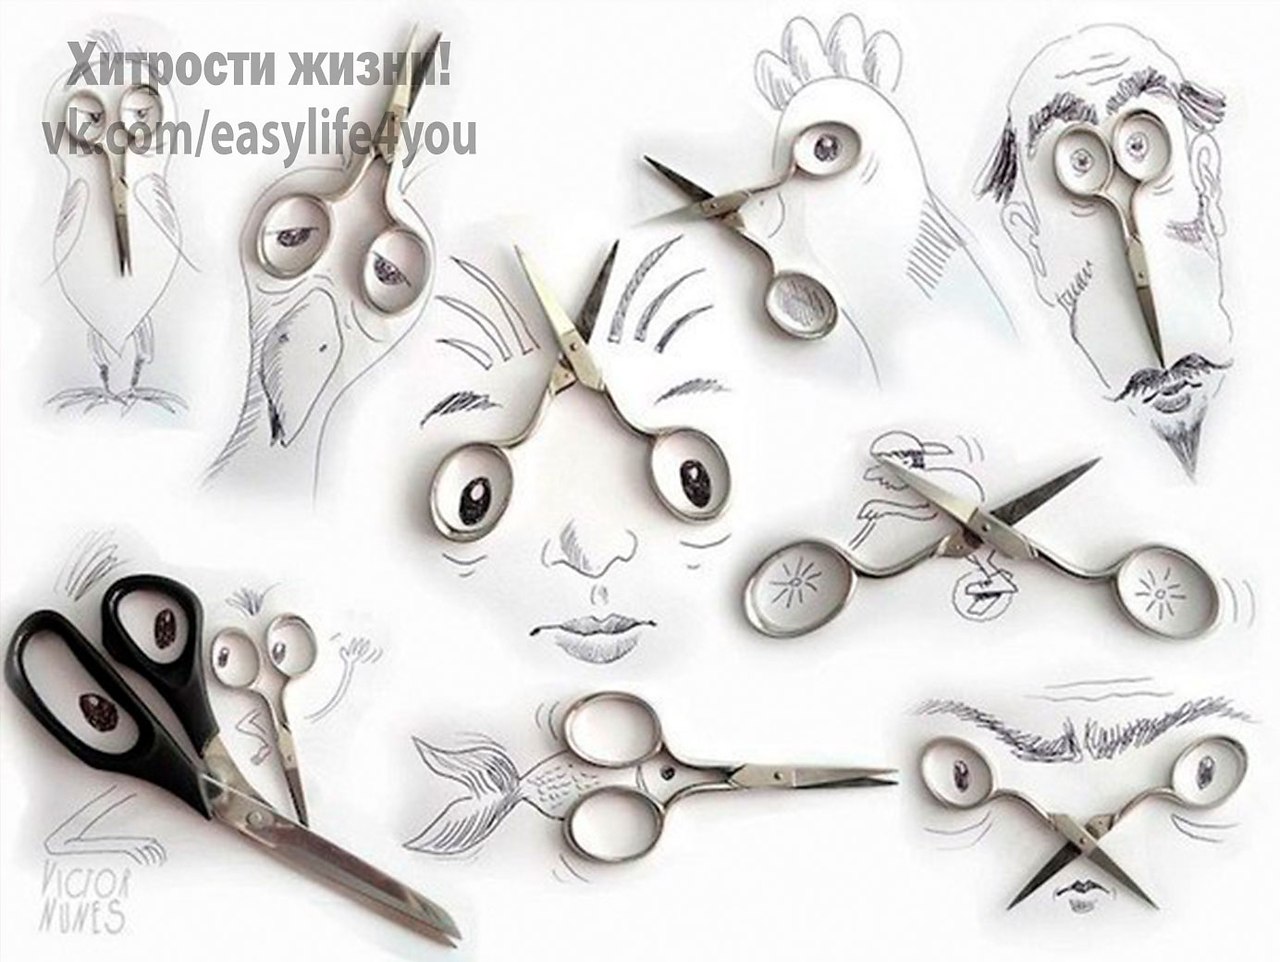 Изображение или символ какого нибудь предмета. Креативное рисование. Креативные ножницы. Необычные ножницы.